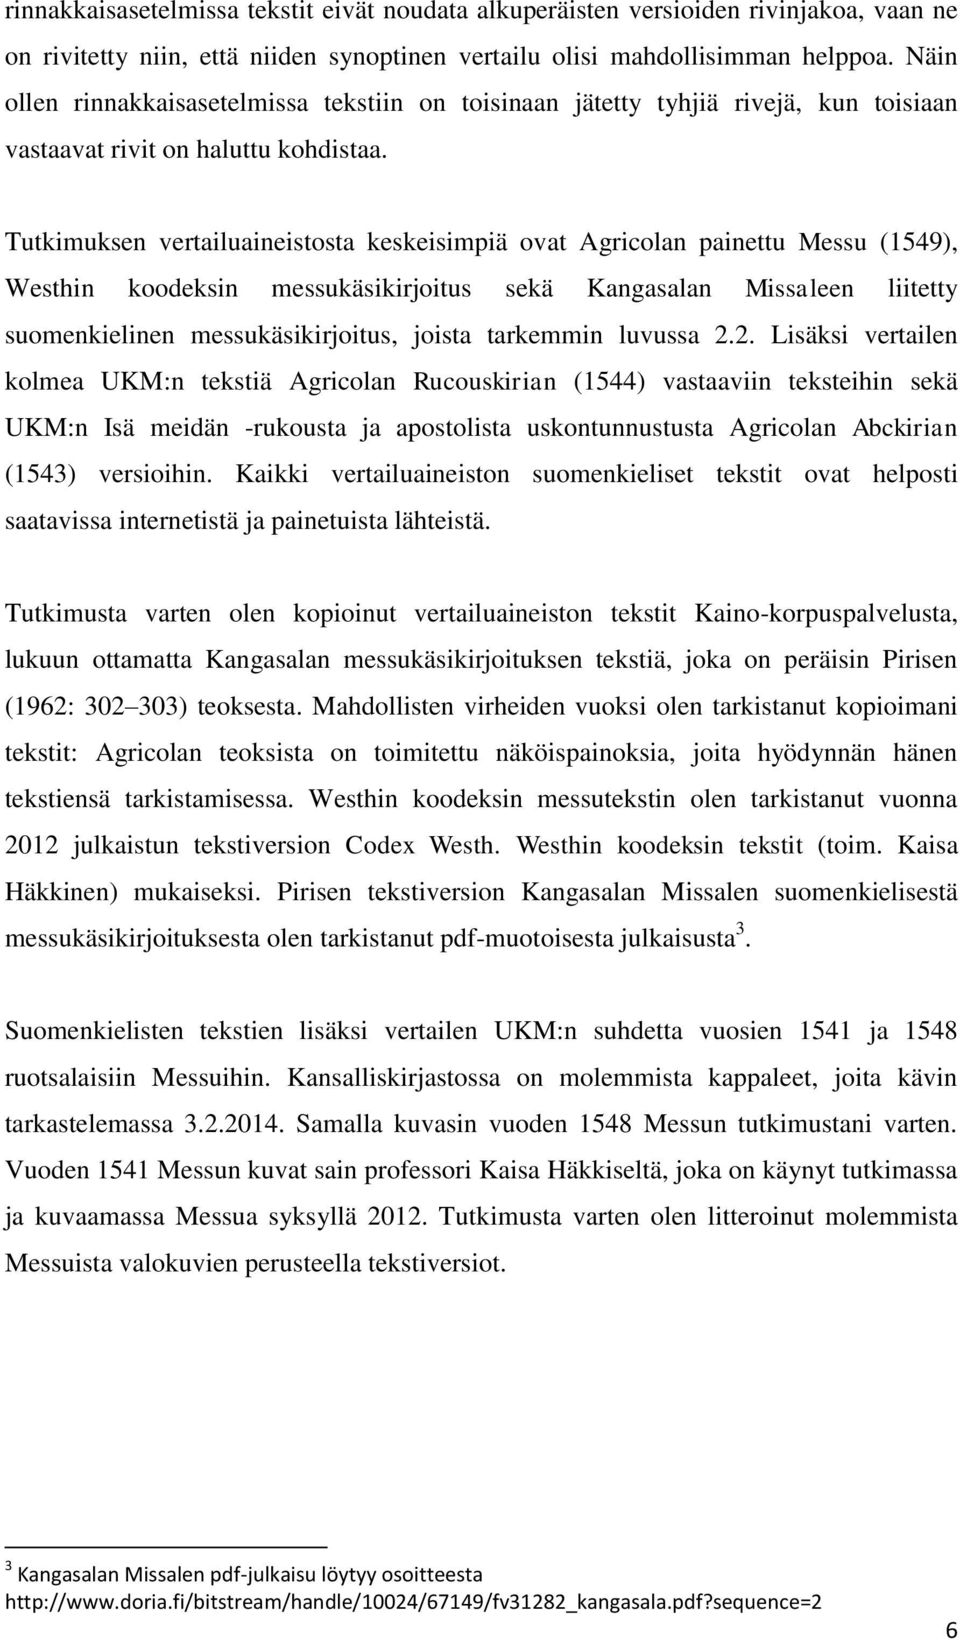 Tutkimuksen vertailuaineistosta keskeisimpiä ovat Agricolan painettu Messu (1549), Westhin koodeksin messukäsikirjoitus sekä Kangasalan Missaleen liitetty suomenkielinen messukäsikirjoitus, joista